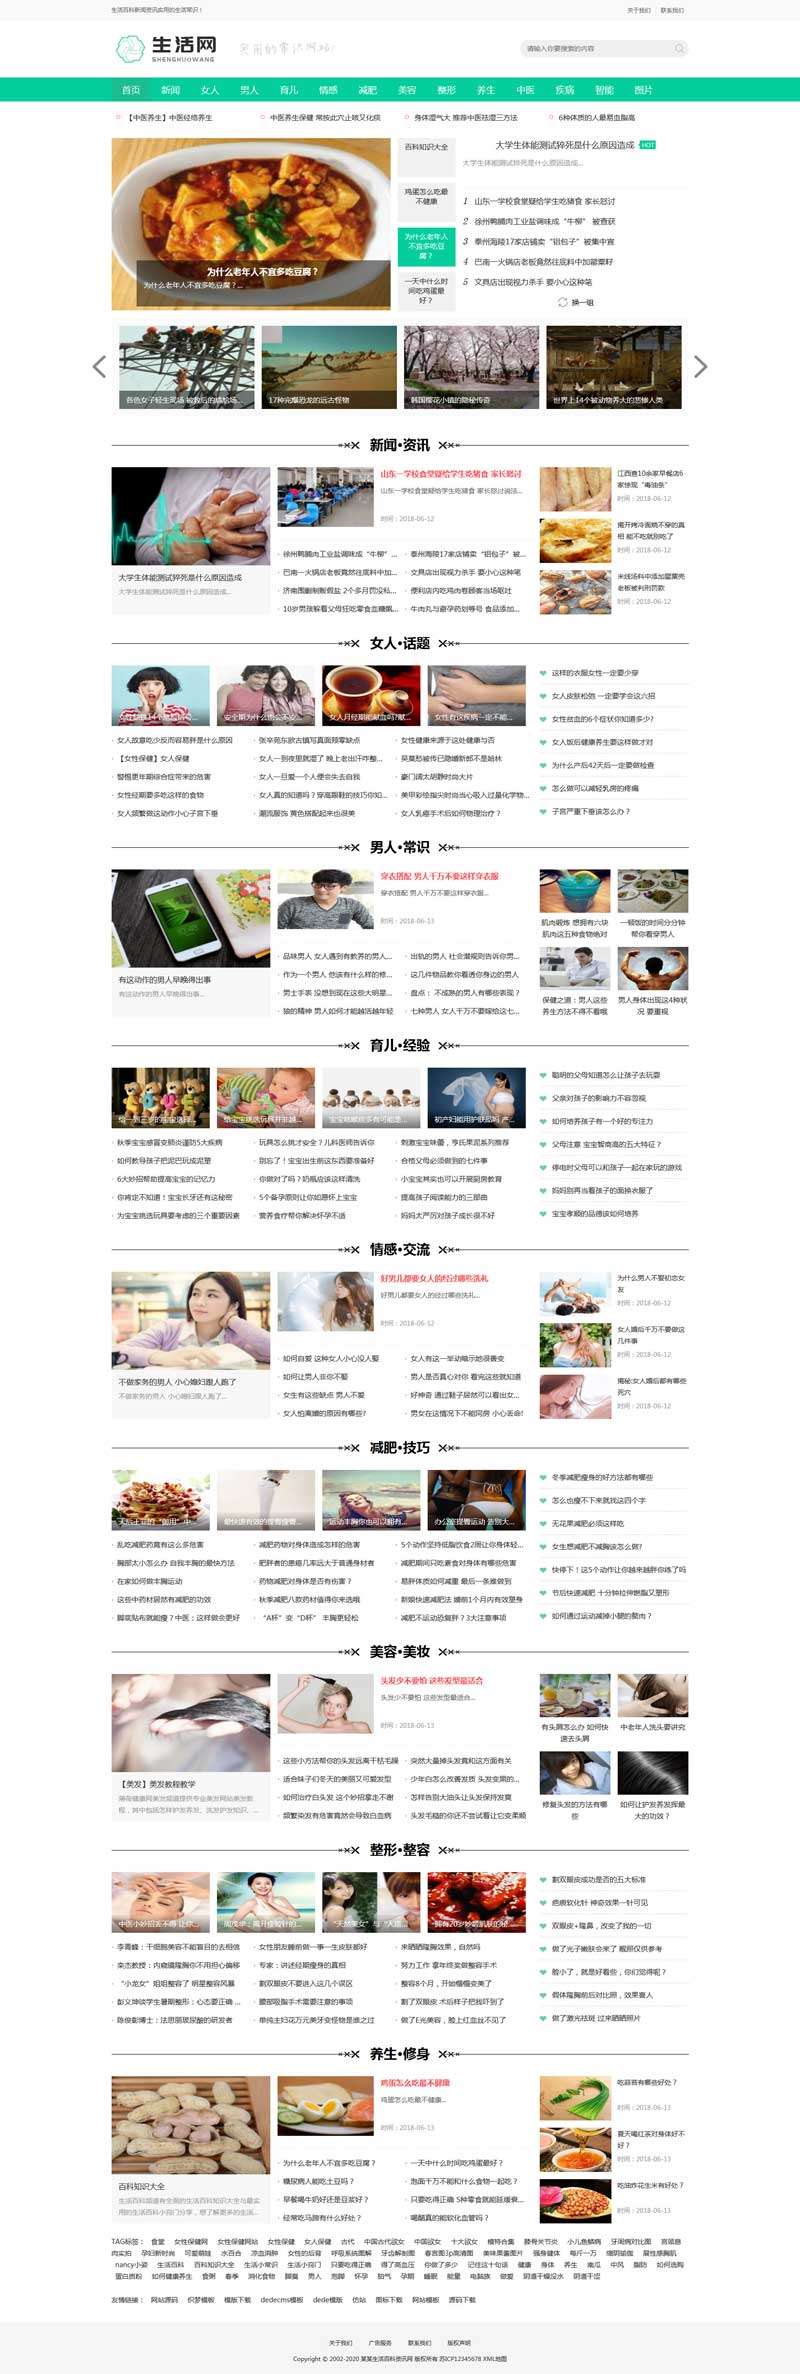 绿色通用生活百科新闻资讯门户官网模板